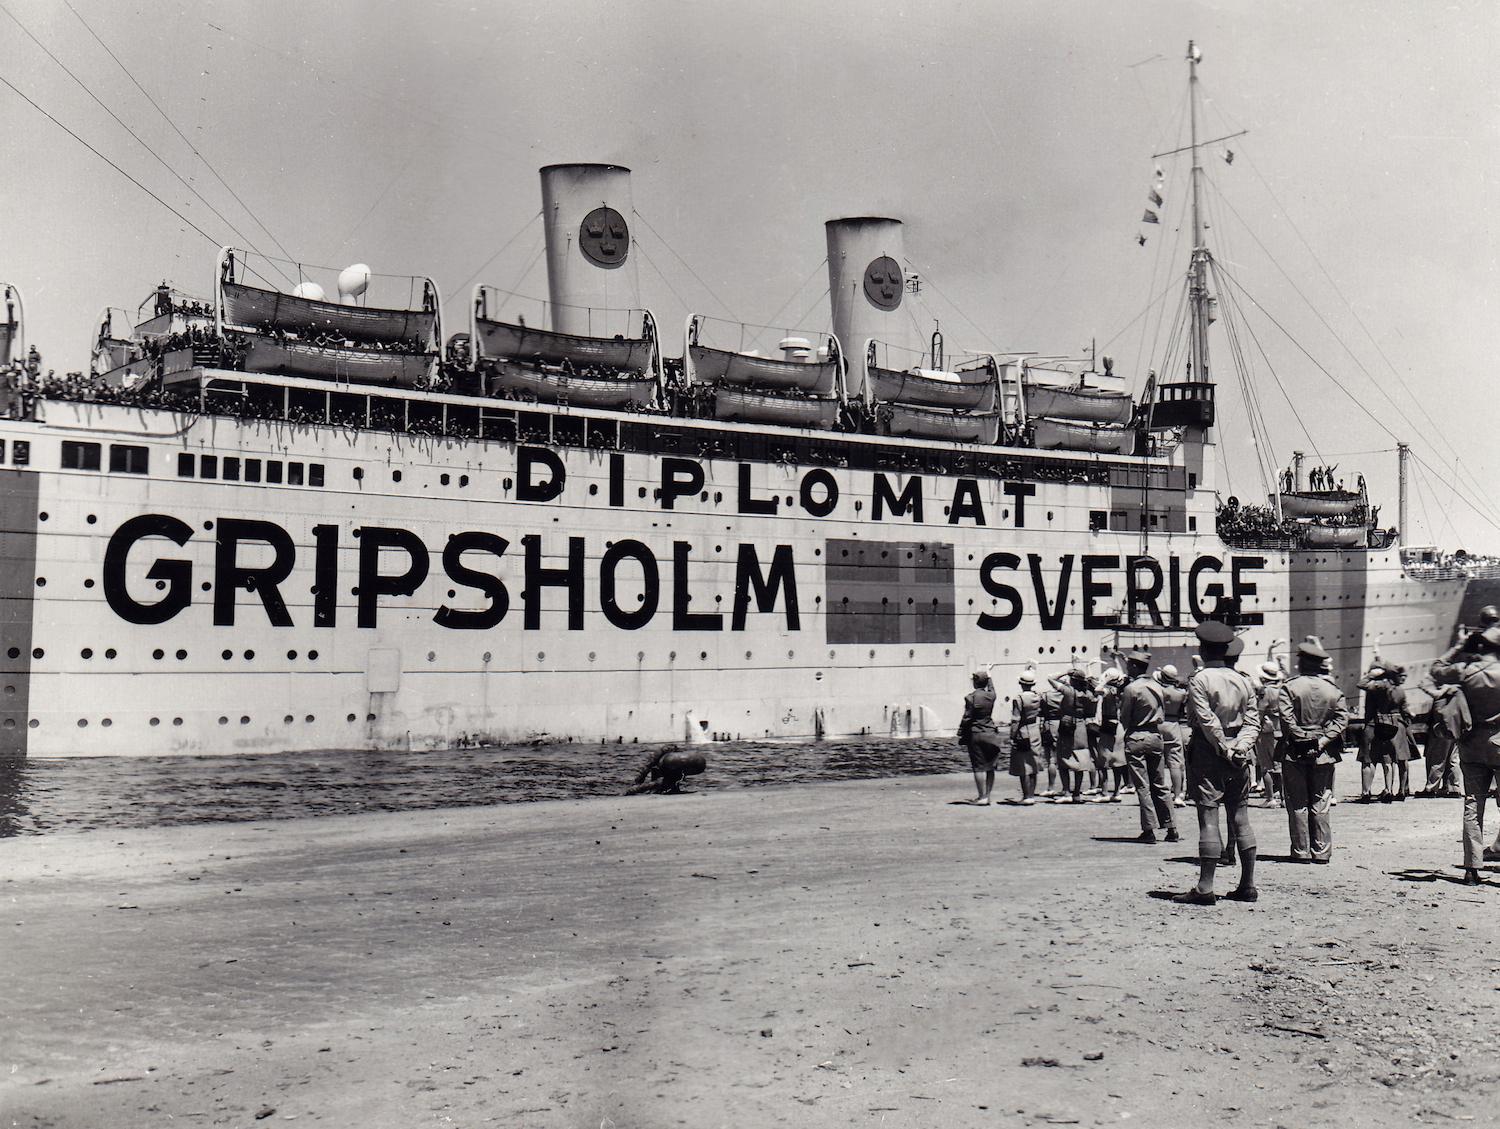 Gripsholm hade helsvensk besättning eftersom Sverige var neutralt under andra världskriget.